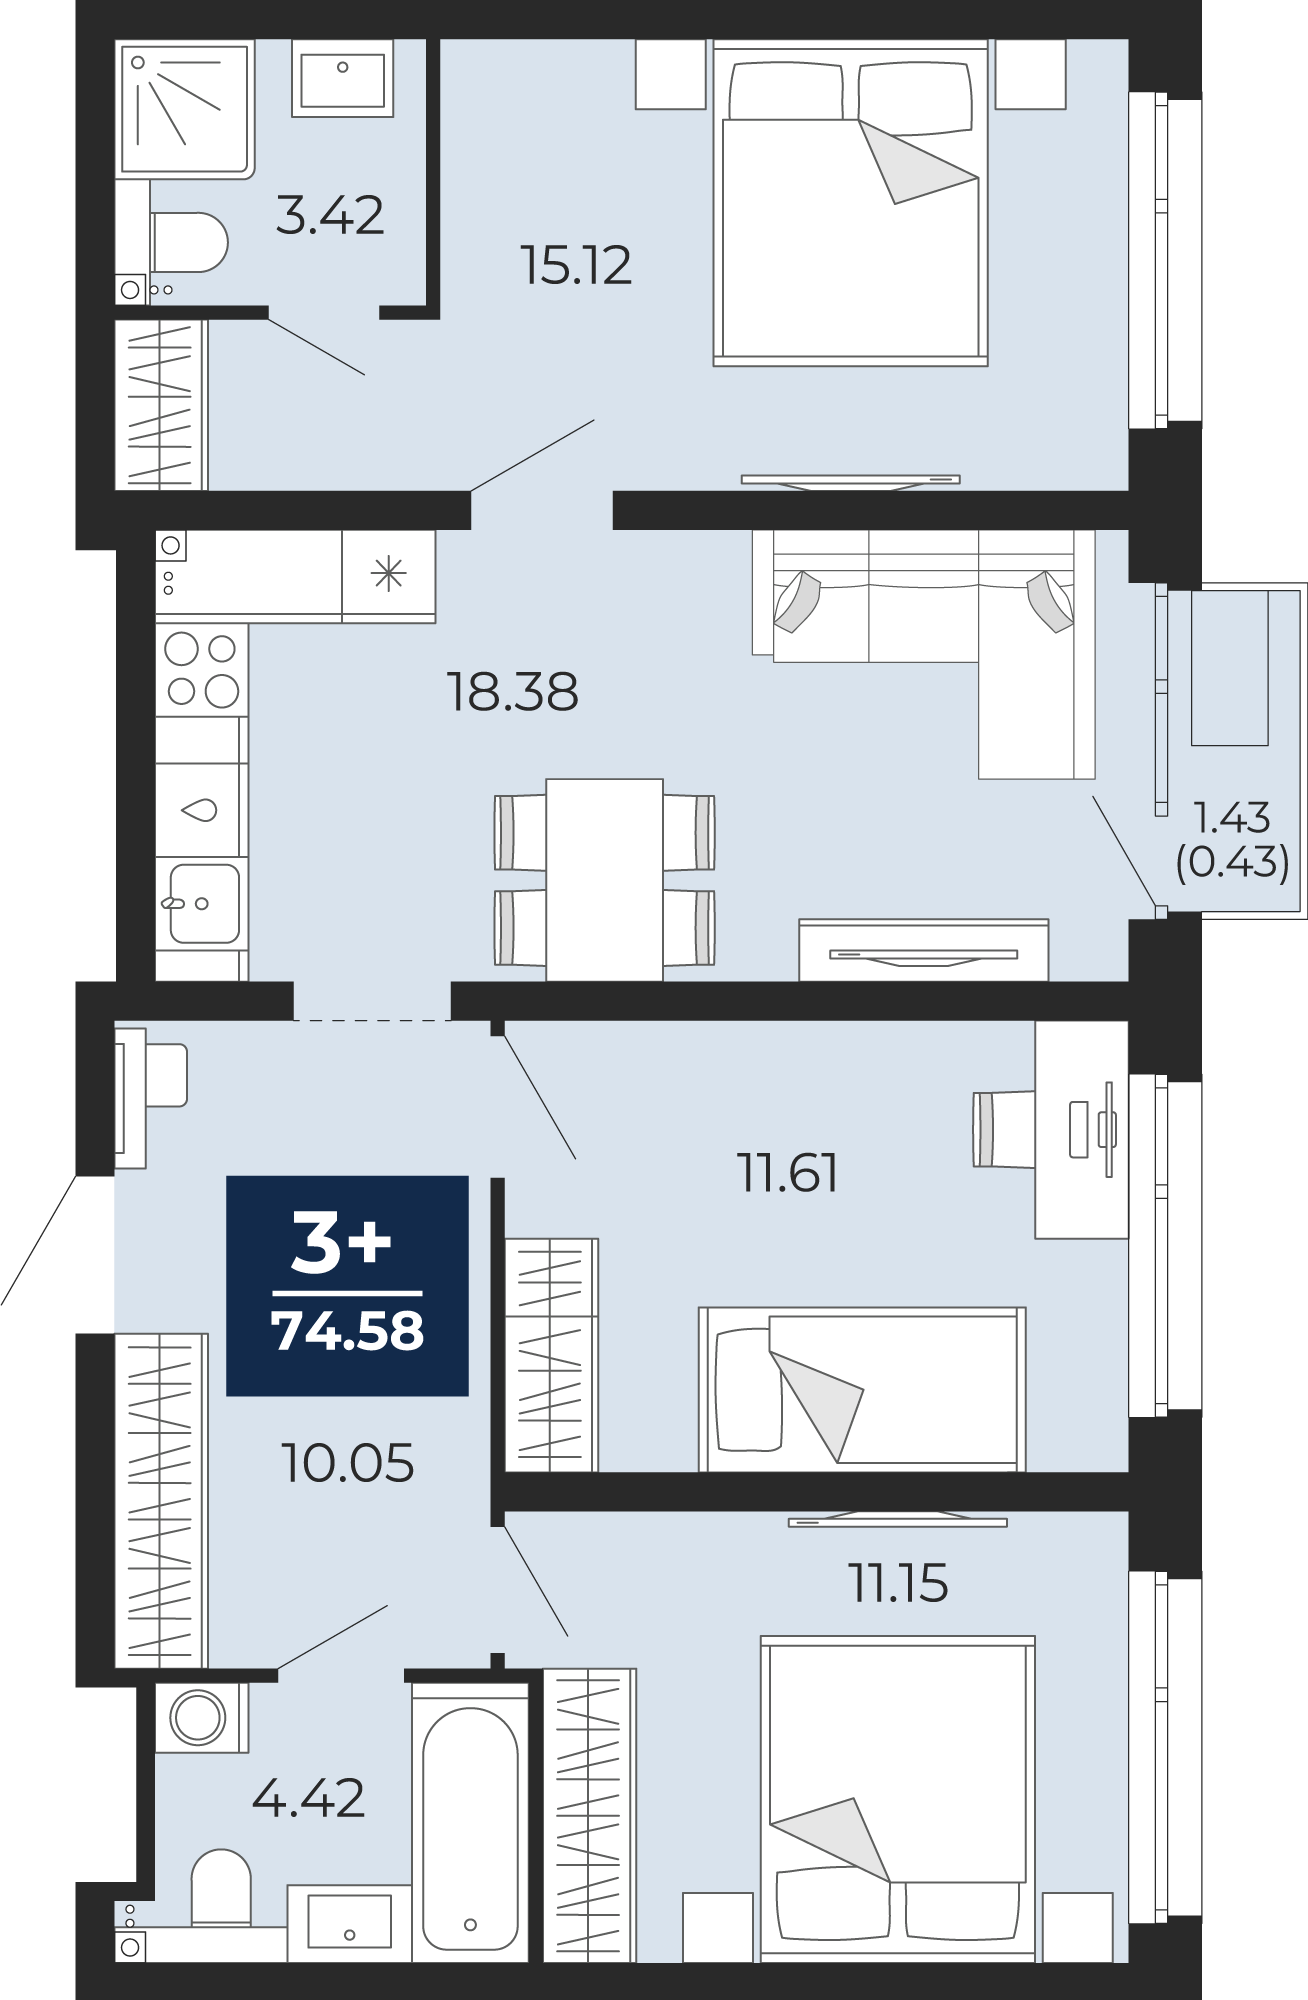 Квартира № 395, 3-комнатная, 74.58 кв. м, 13 этаж